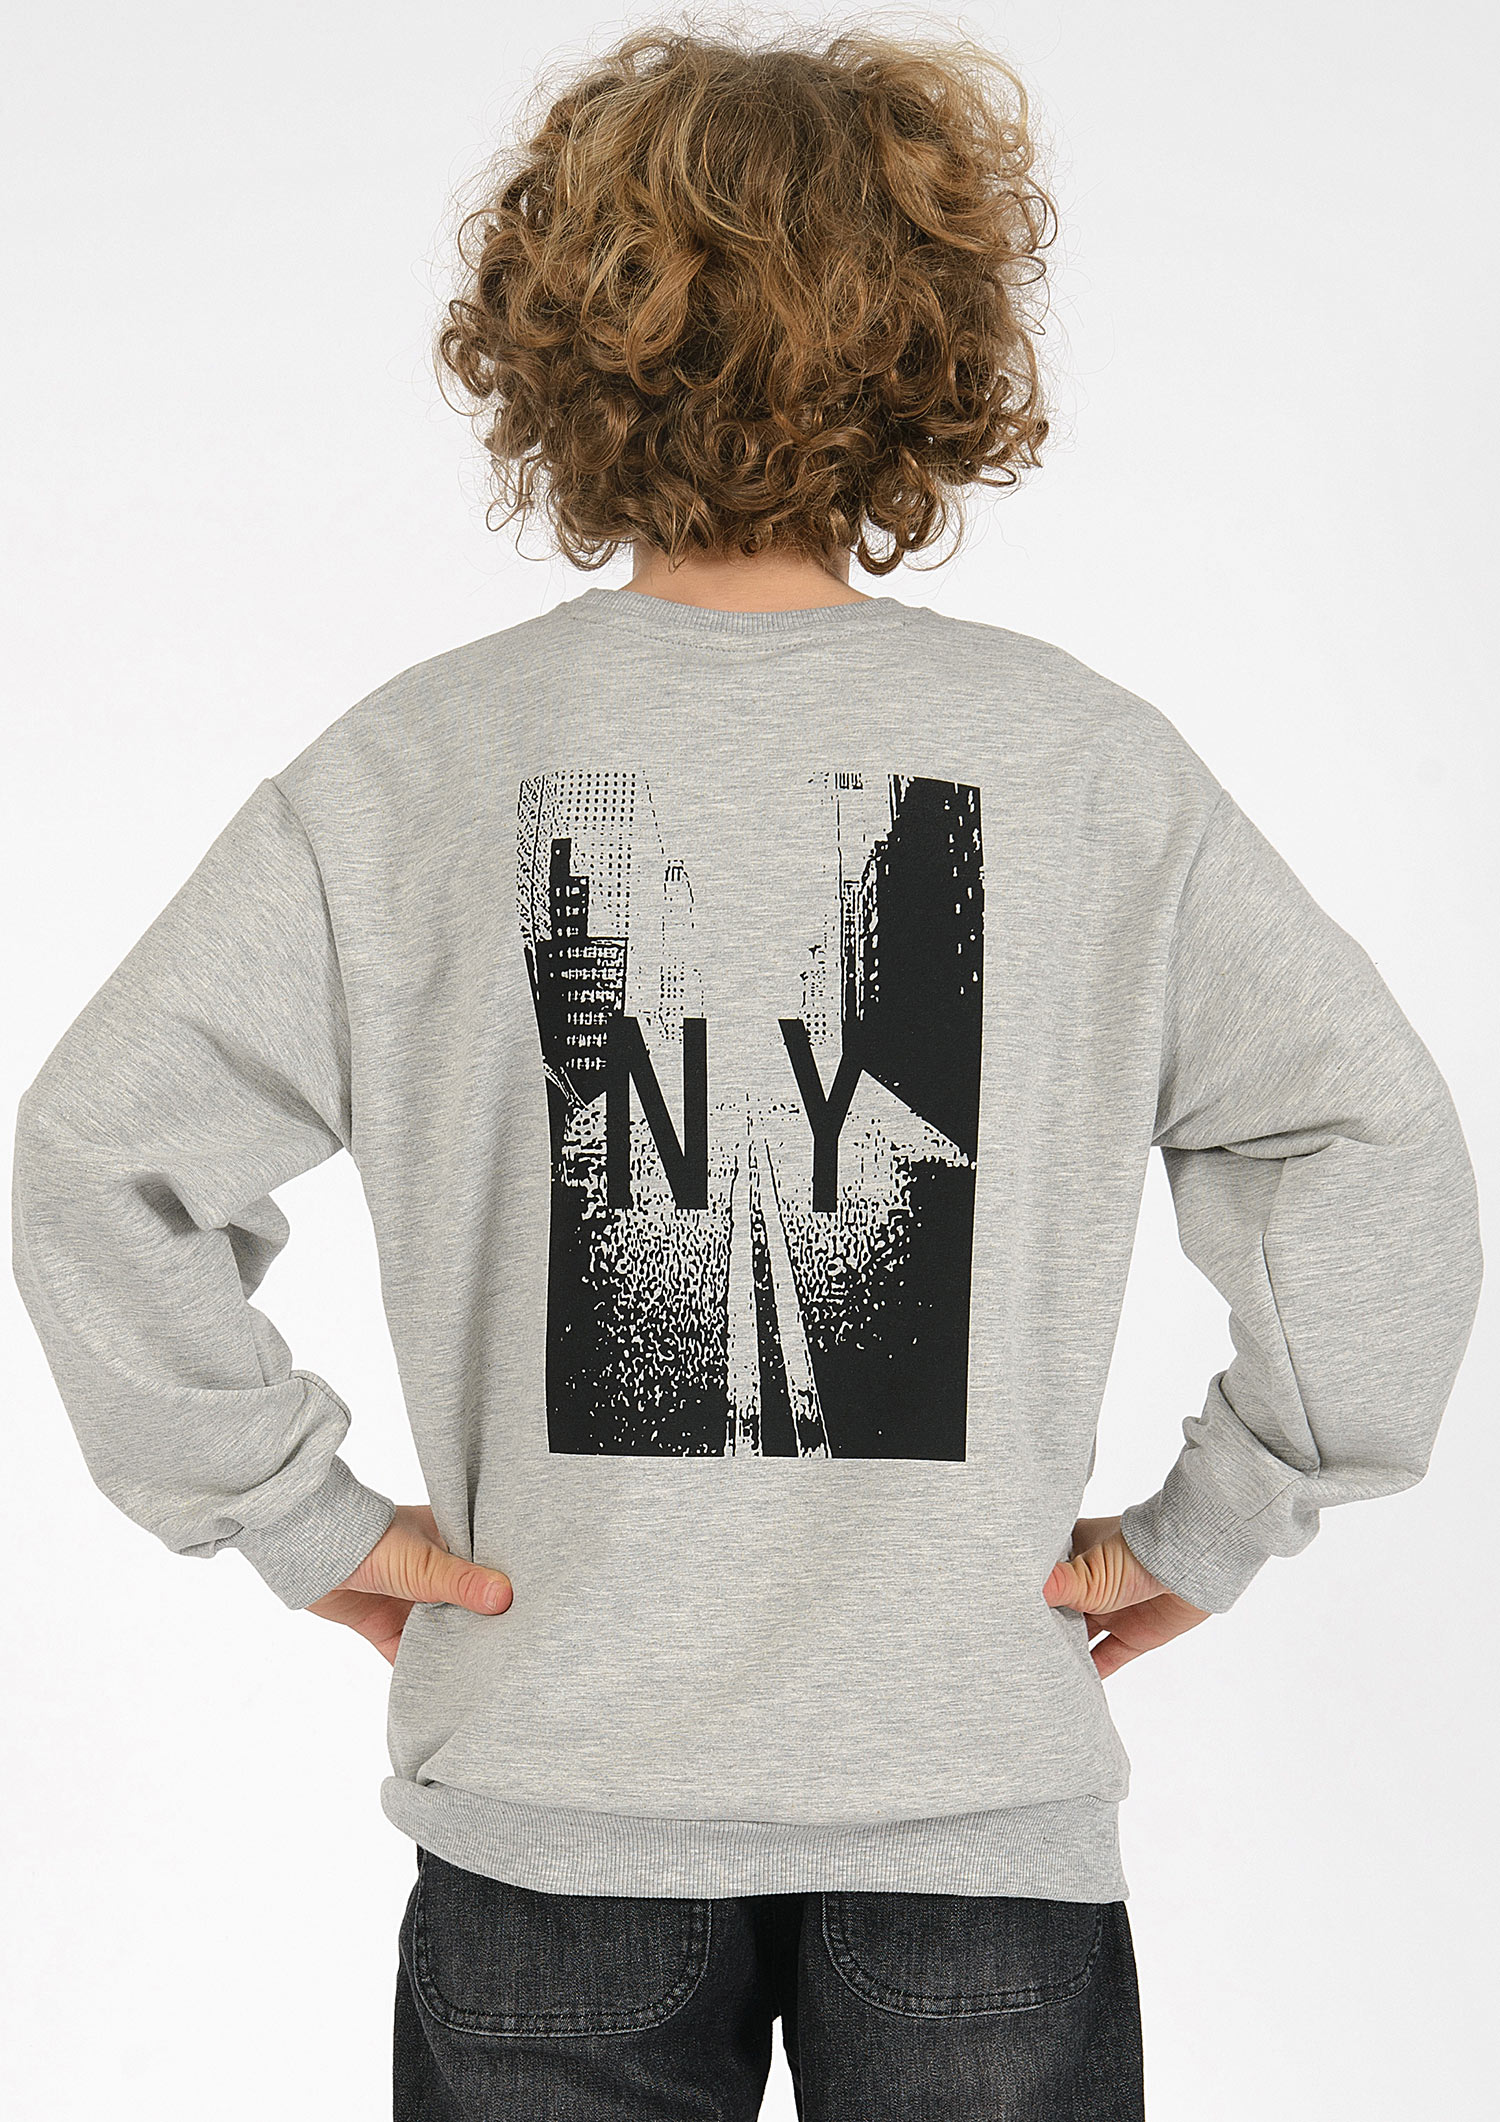 6317-Boys Oversized Sweatshirt -New York